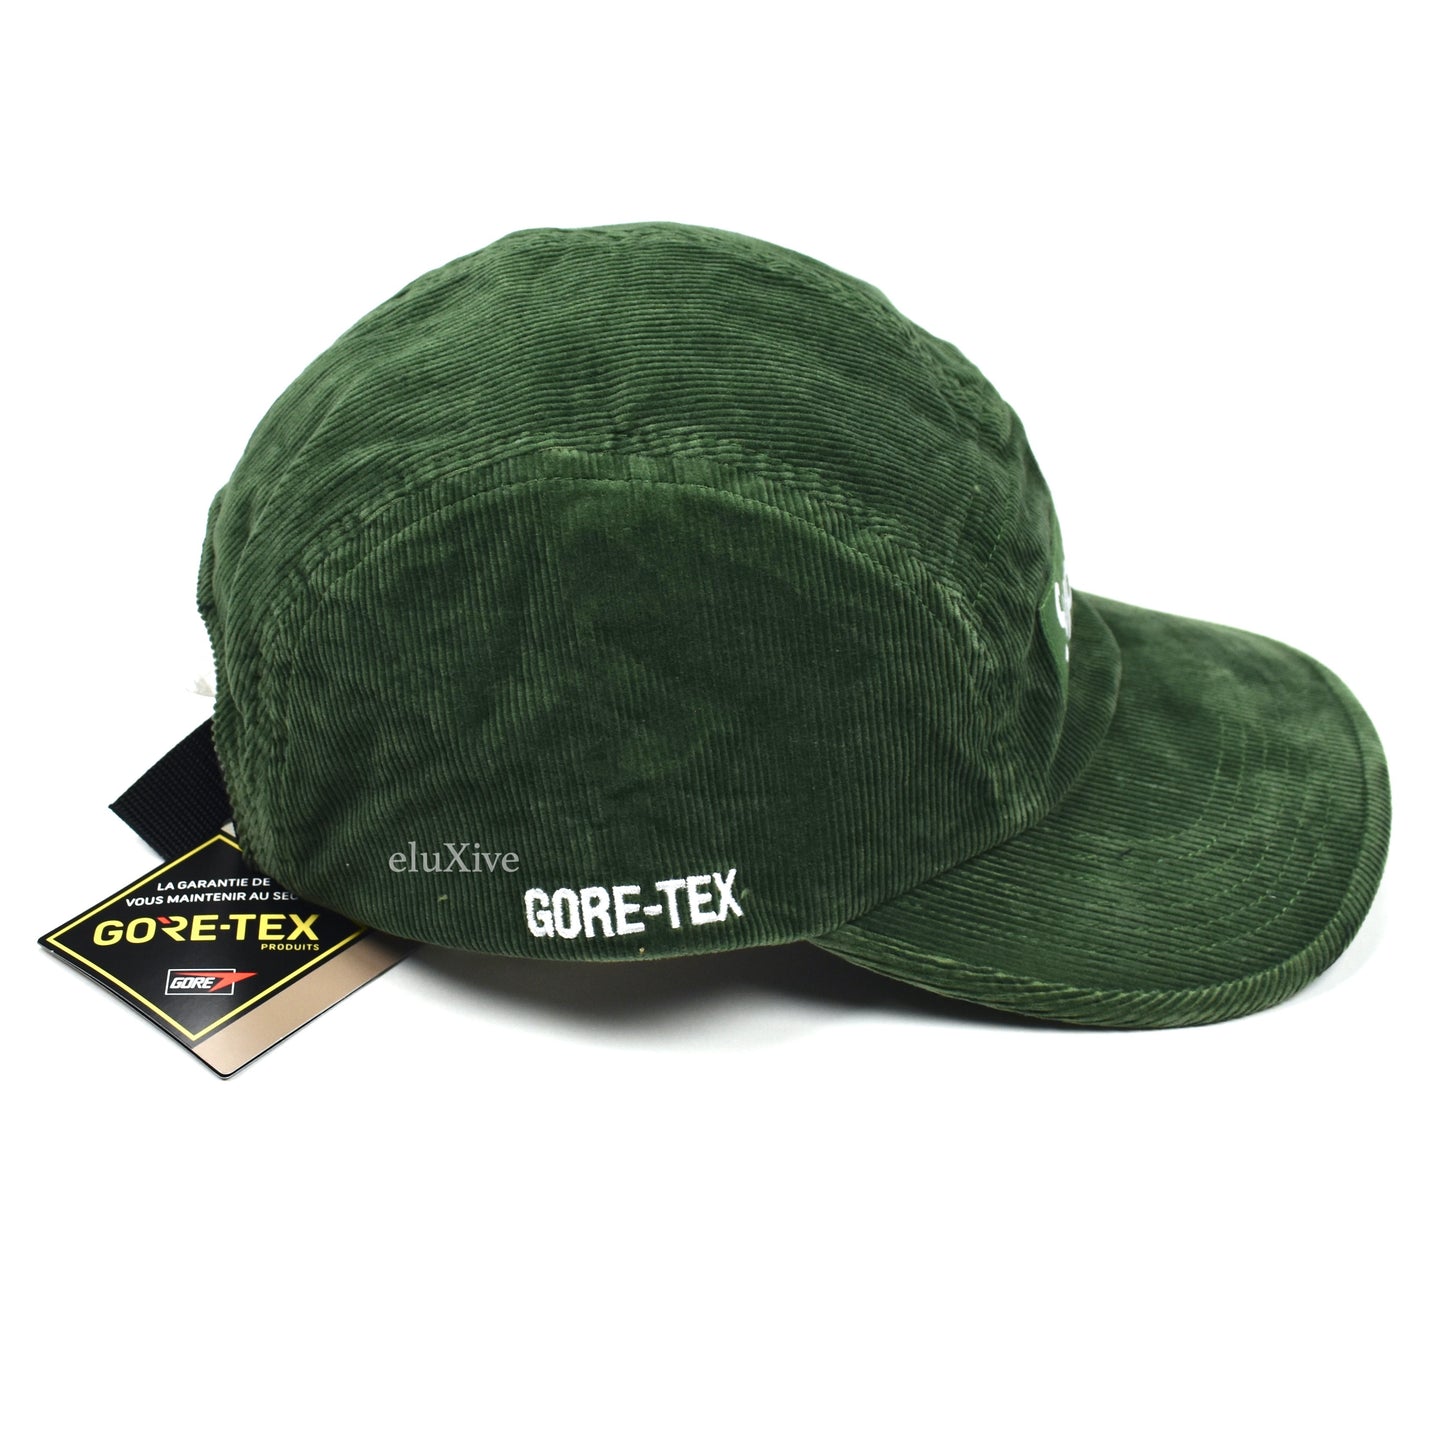 Supreme - Gore-Tex Corduroy Box Logo Hat (Green)